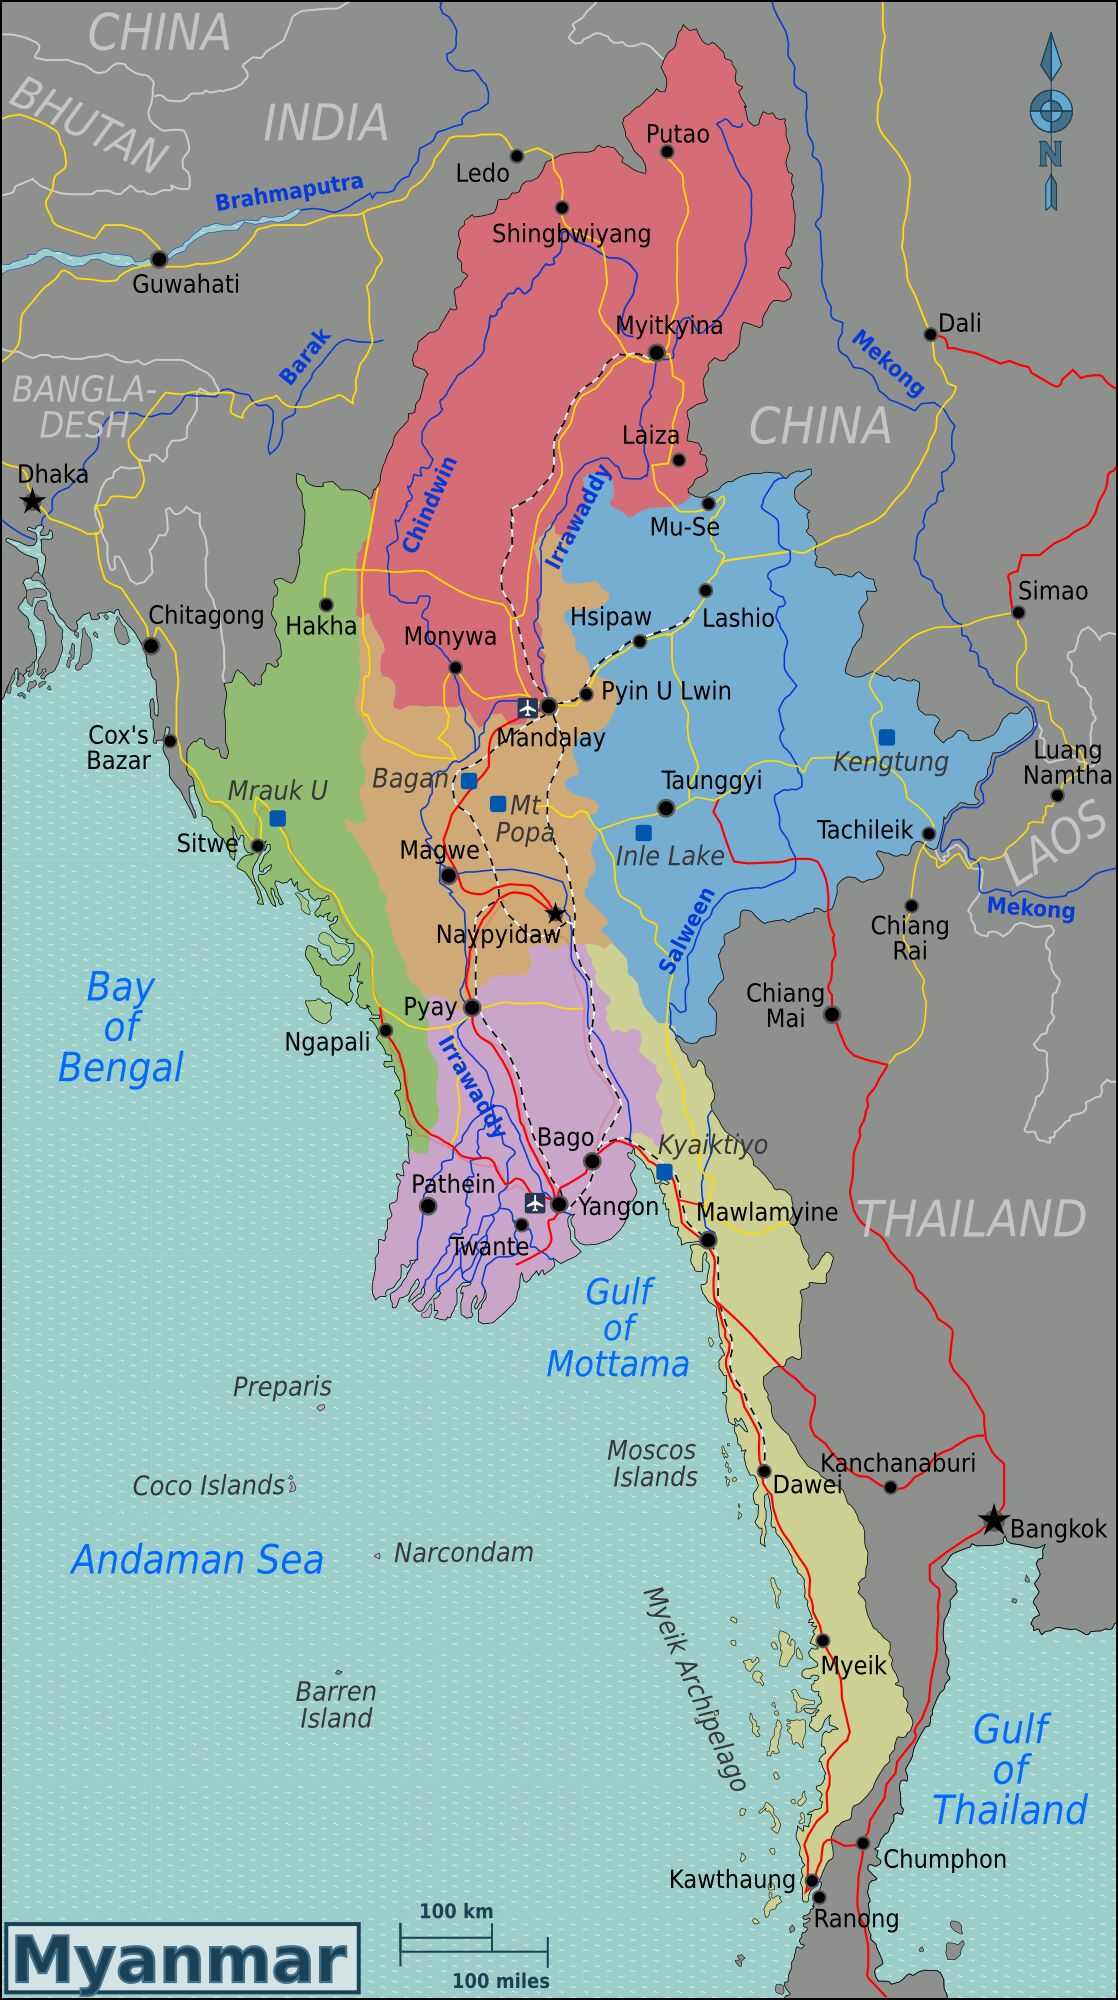 Figure 1: Map of Myanmar, source: Wikimedia Commons, 2009